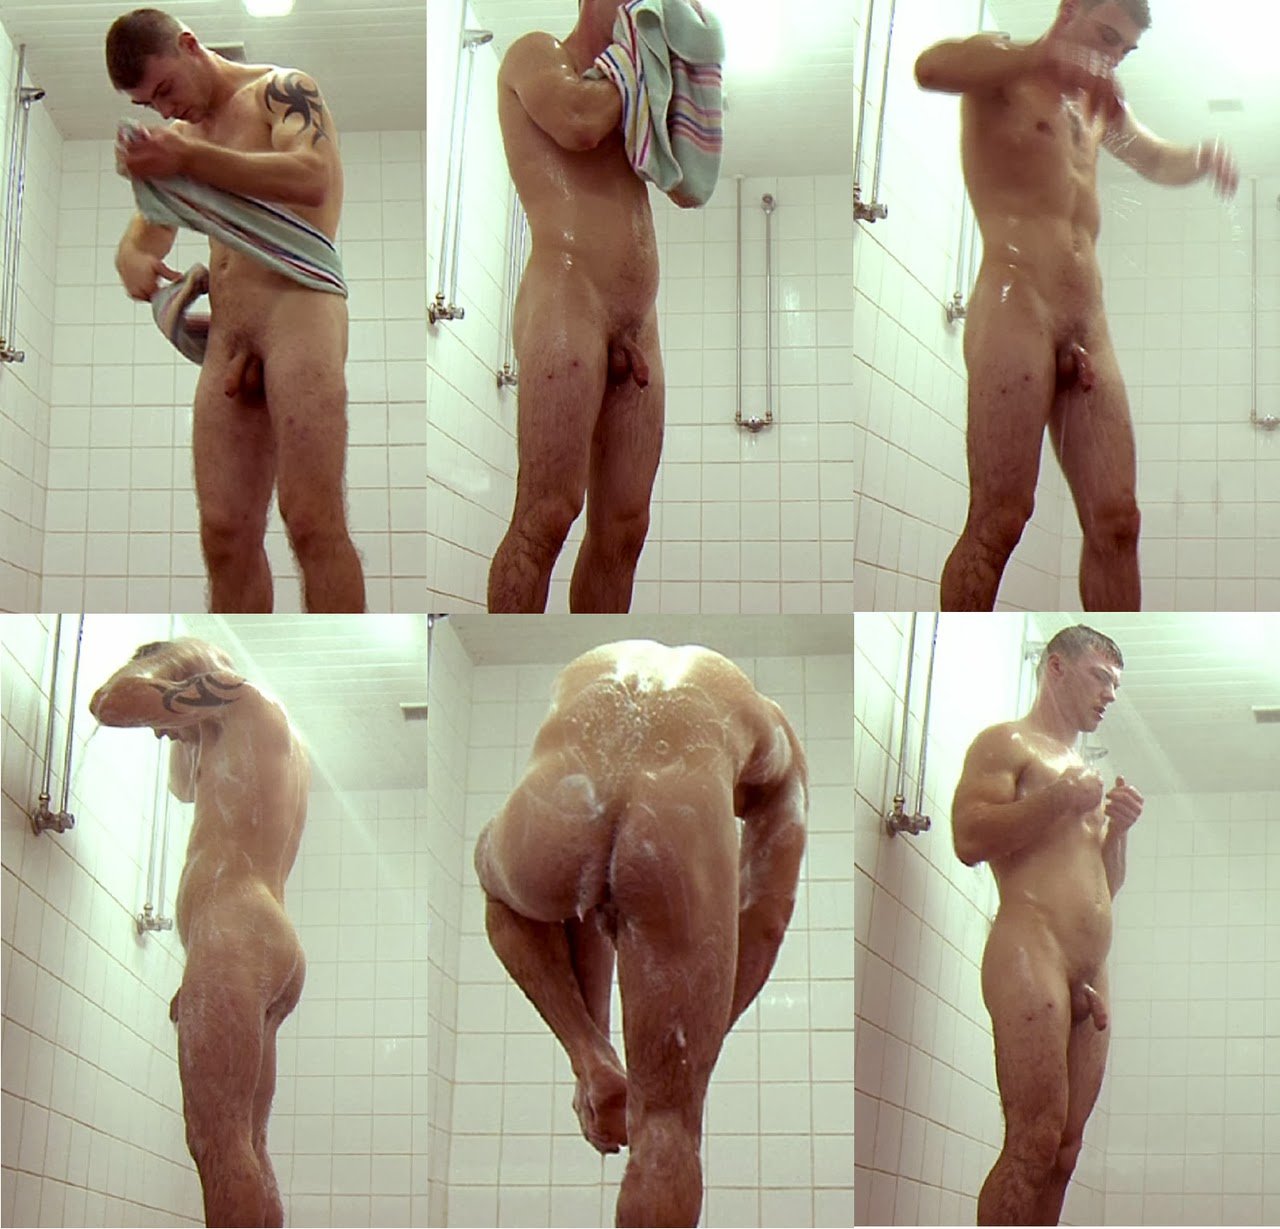 Best of Hidden camera naked boys